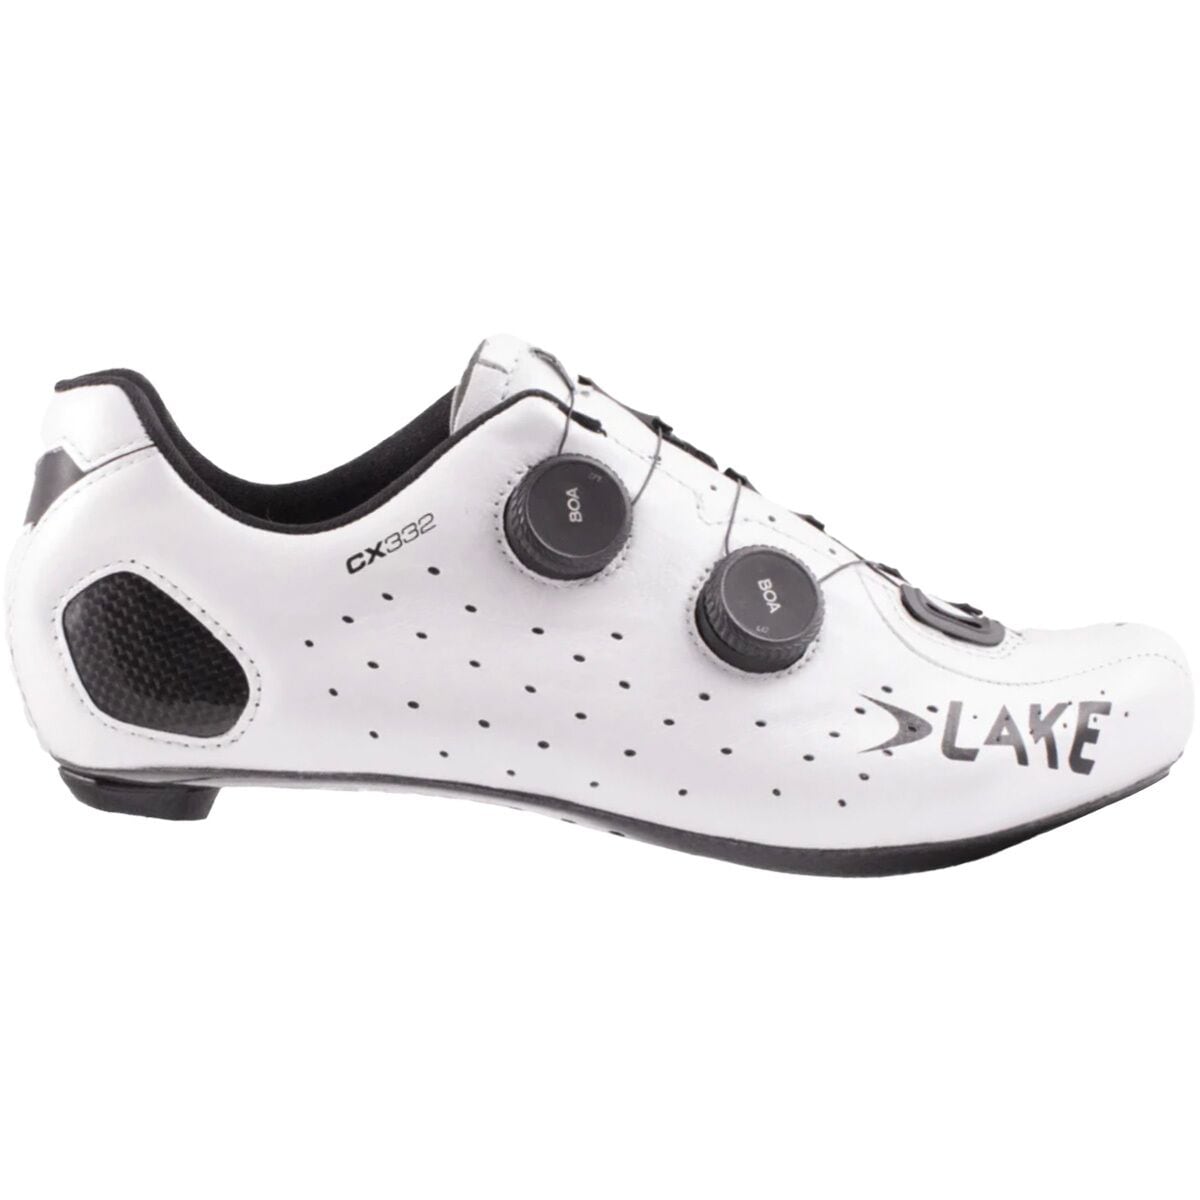 Lake CX332 Cycling Shoe Men's